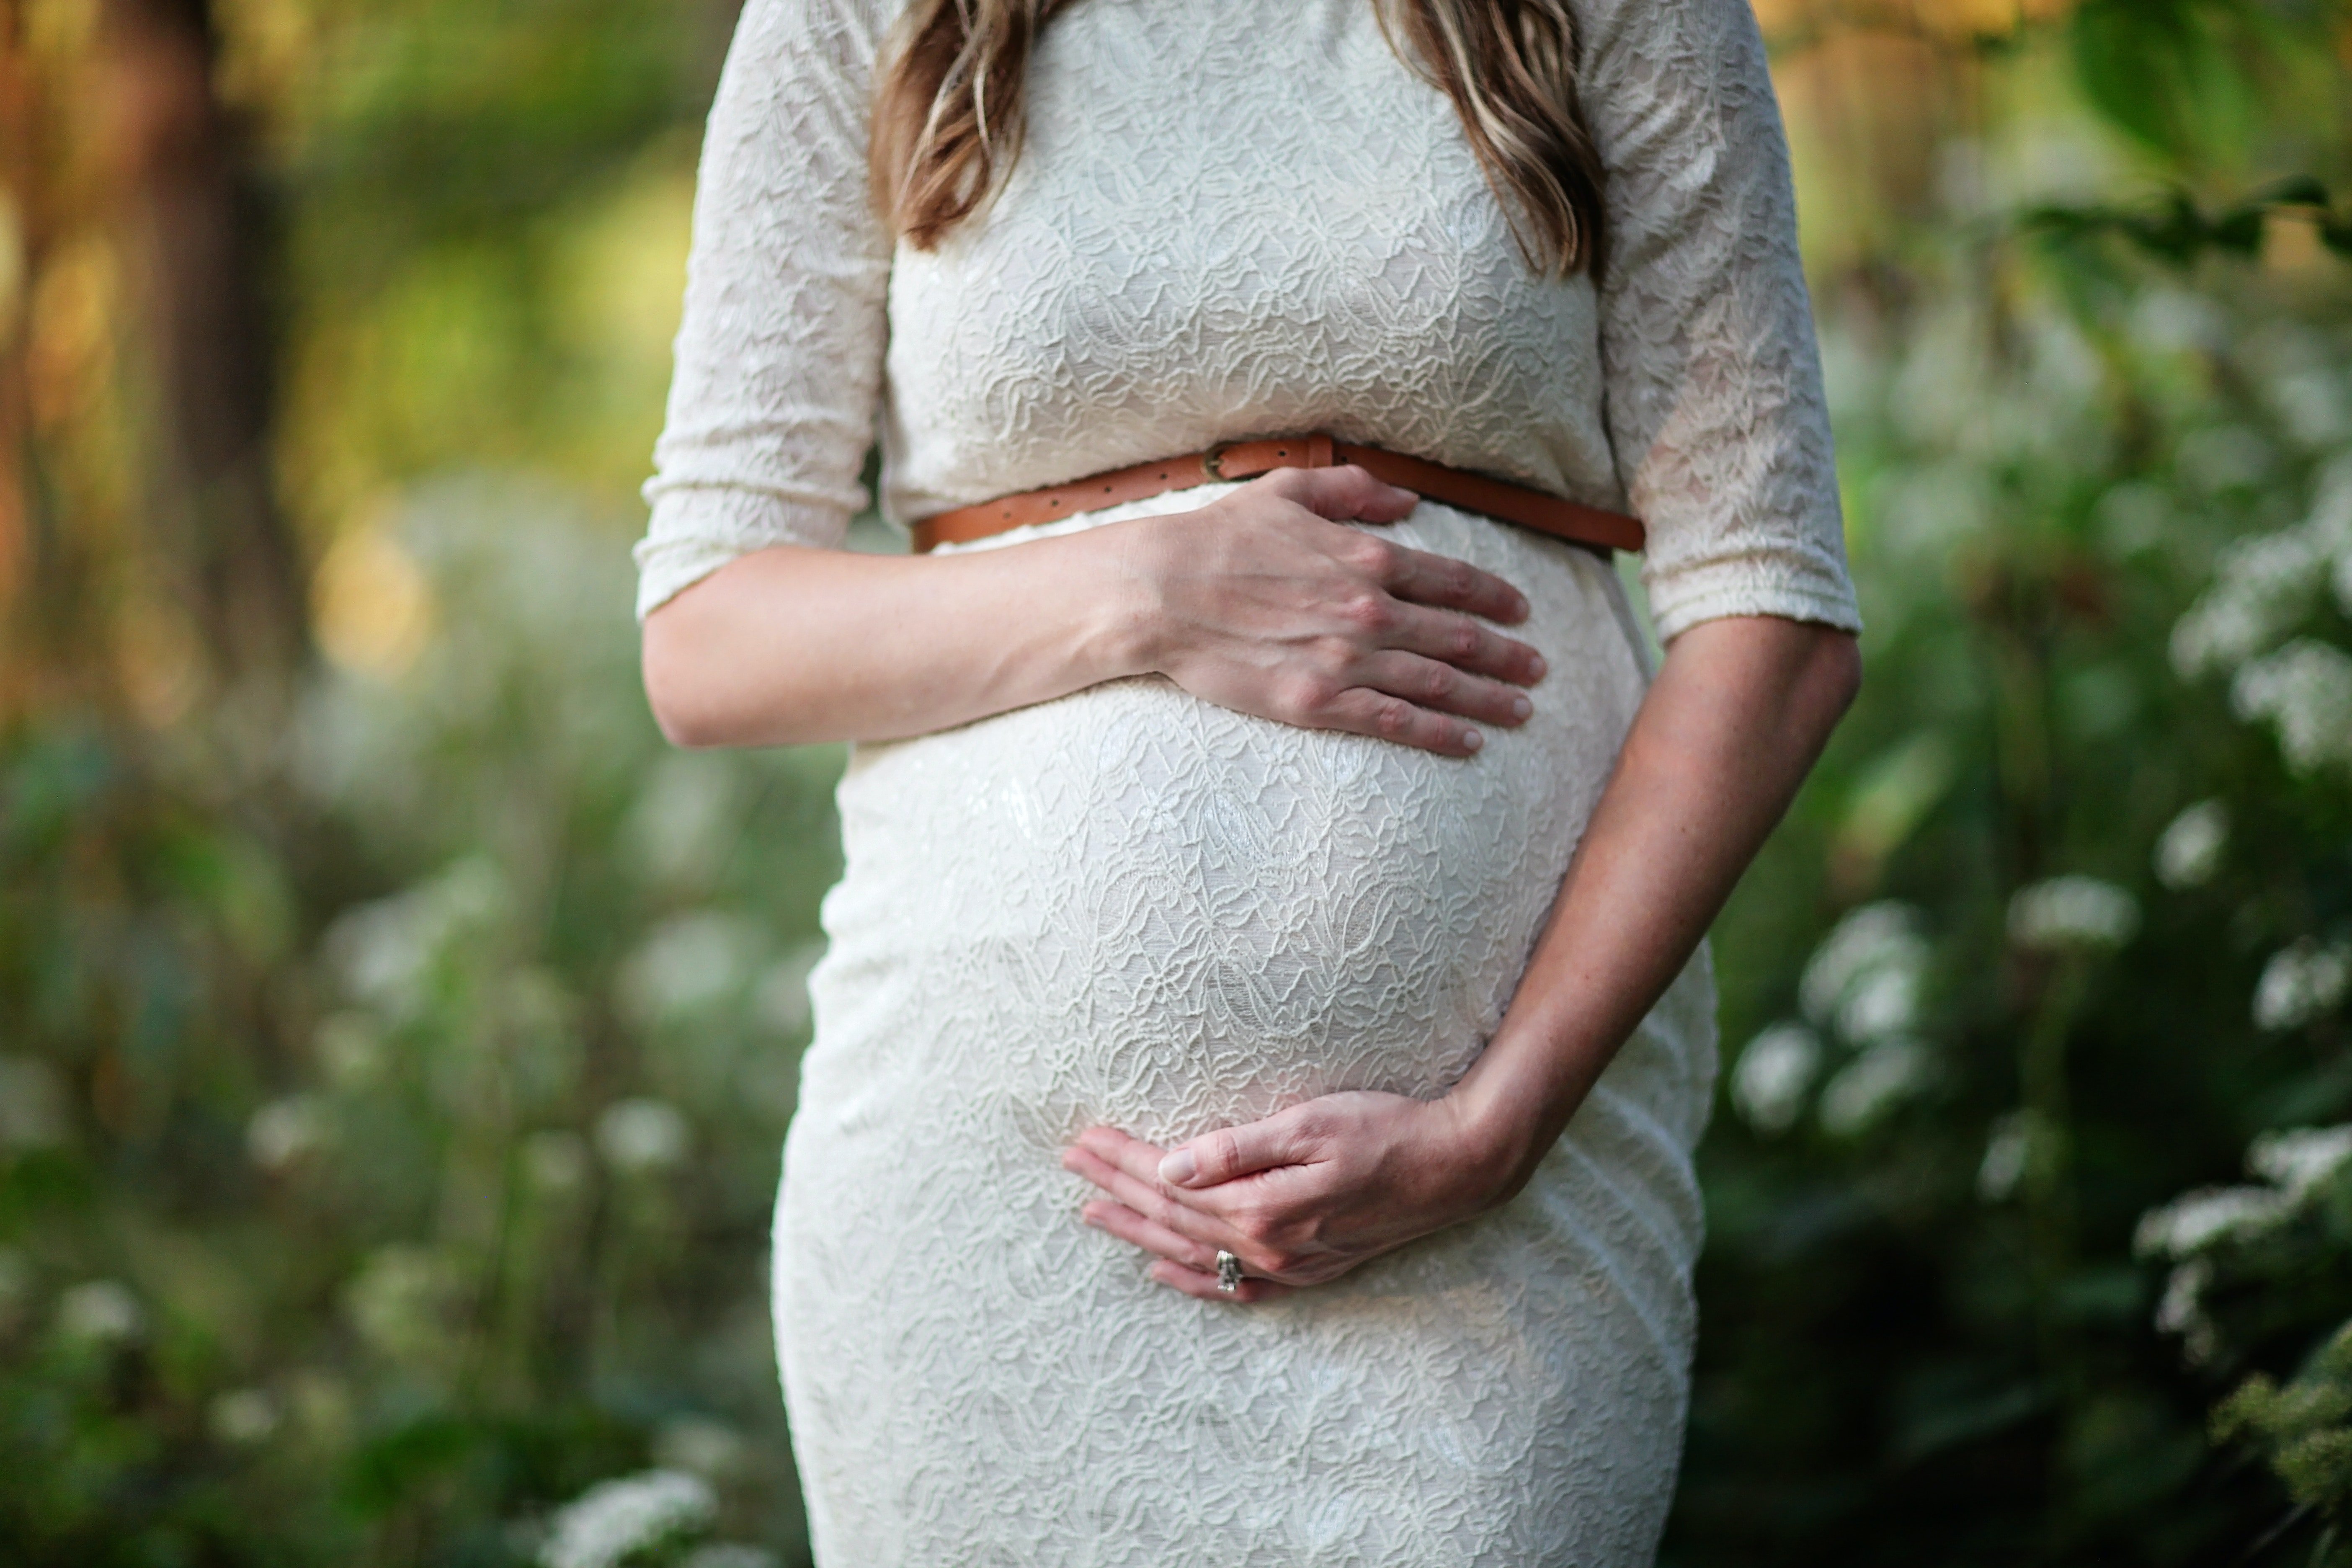 Die Frau von Caleb Harris war im achten Monat schwanger | Quelle: Pexels